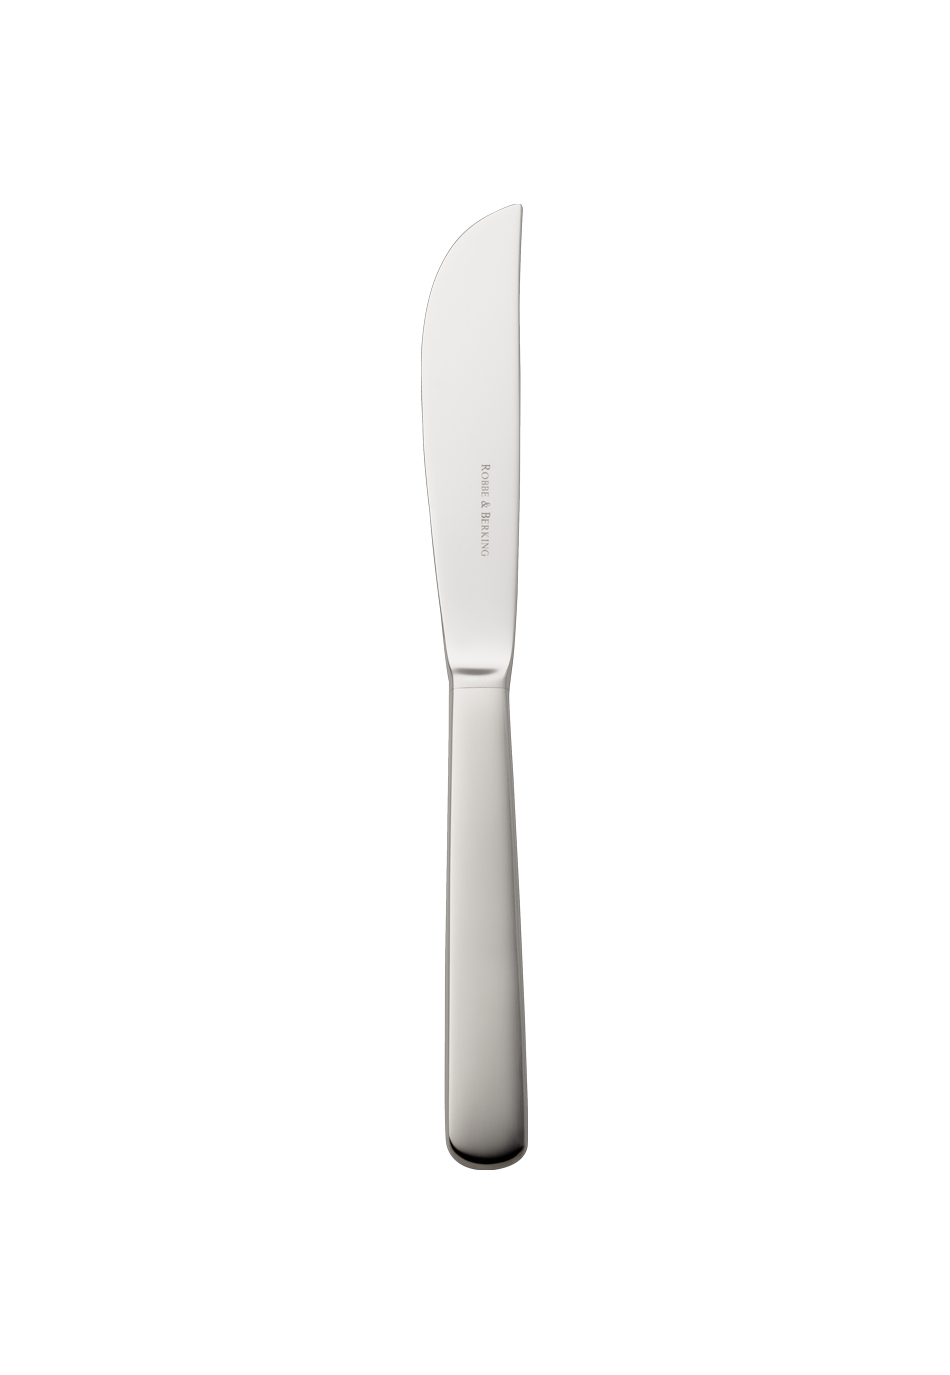 Atlantic Menu Knife (18/8 stainless steel)